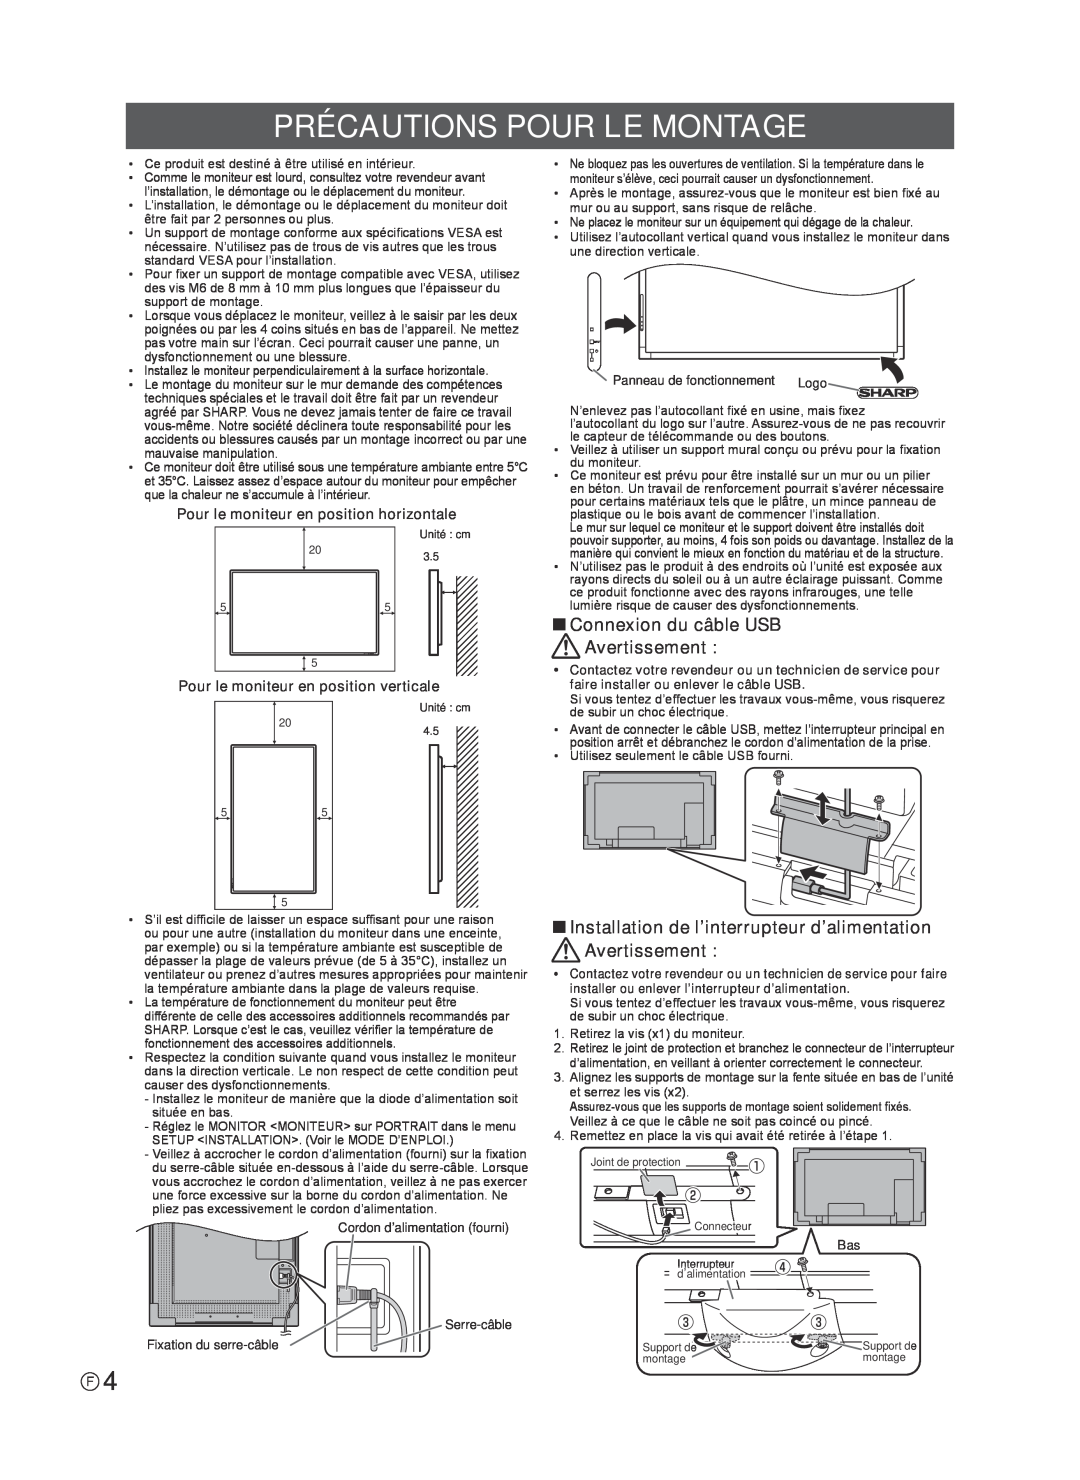 Sharp TINSE1181MPZZ(2) installation manual Précautions Pour Le Montage, Connexion du câble USB Avertissement 